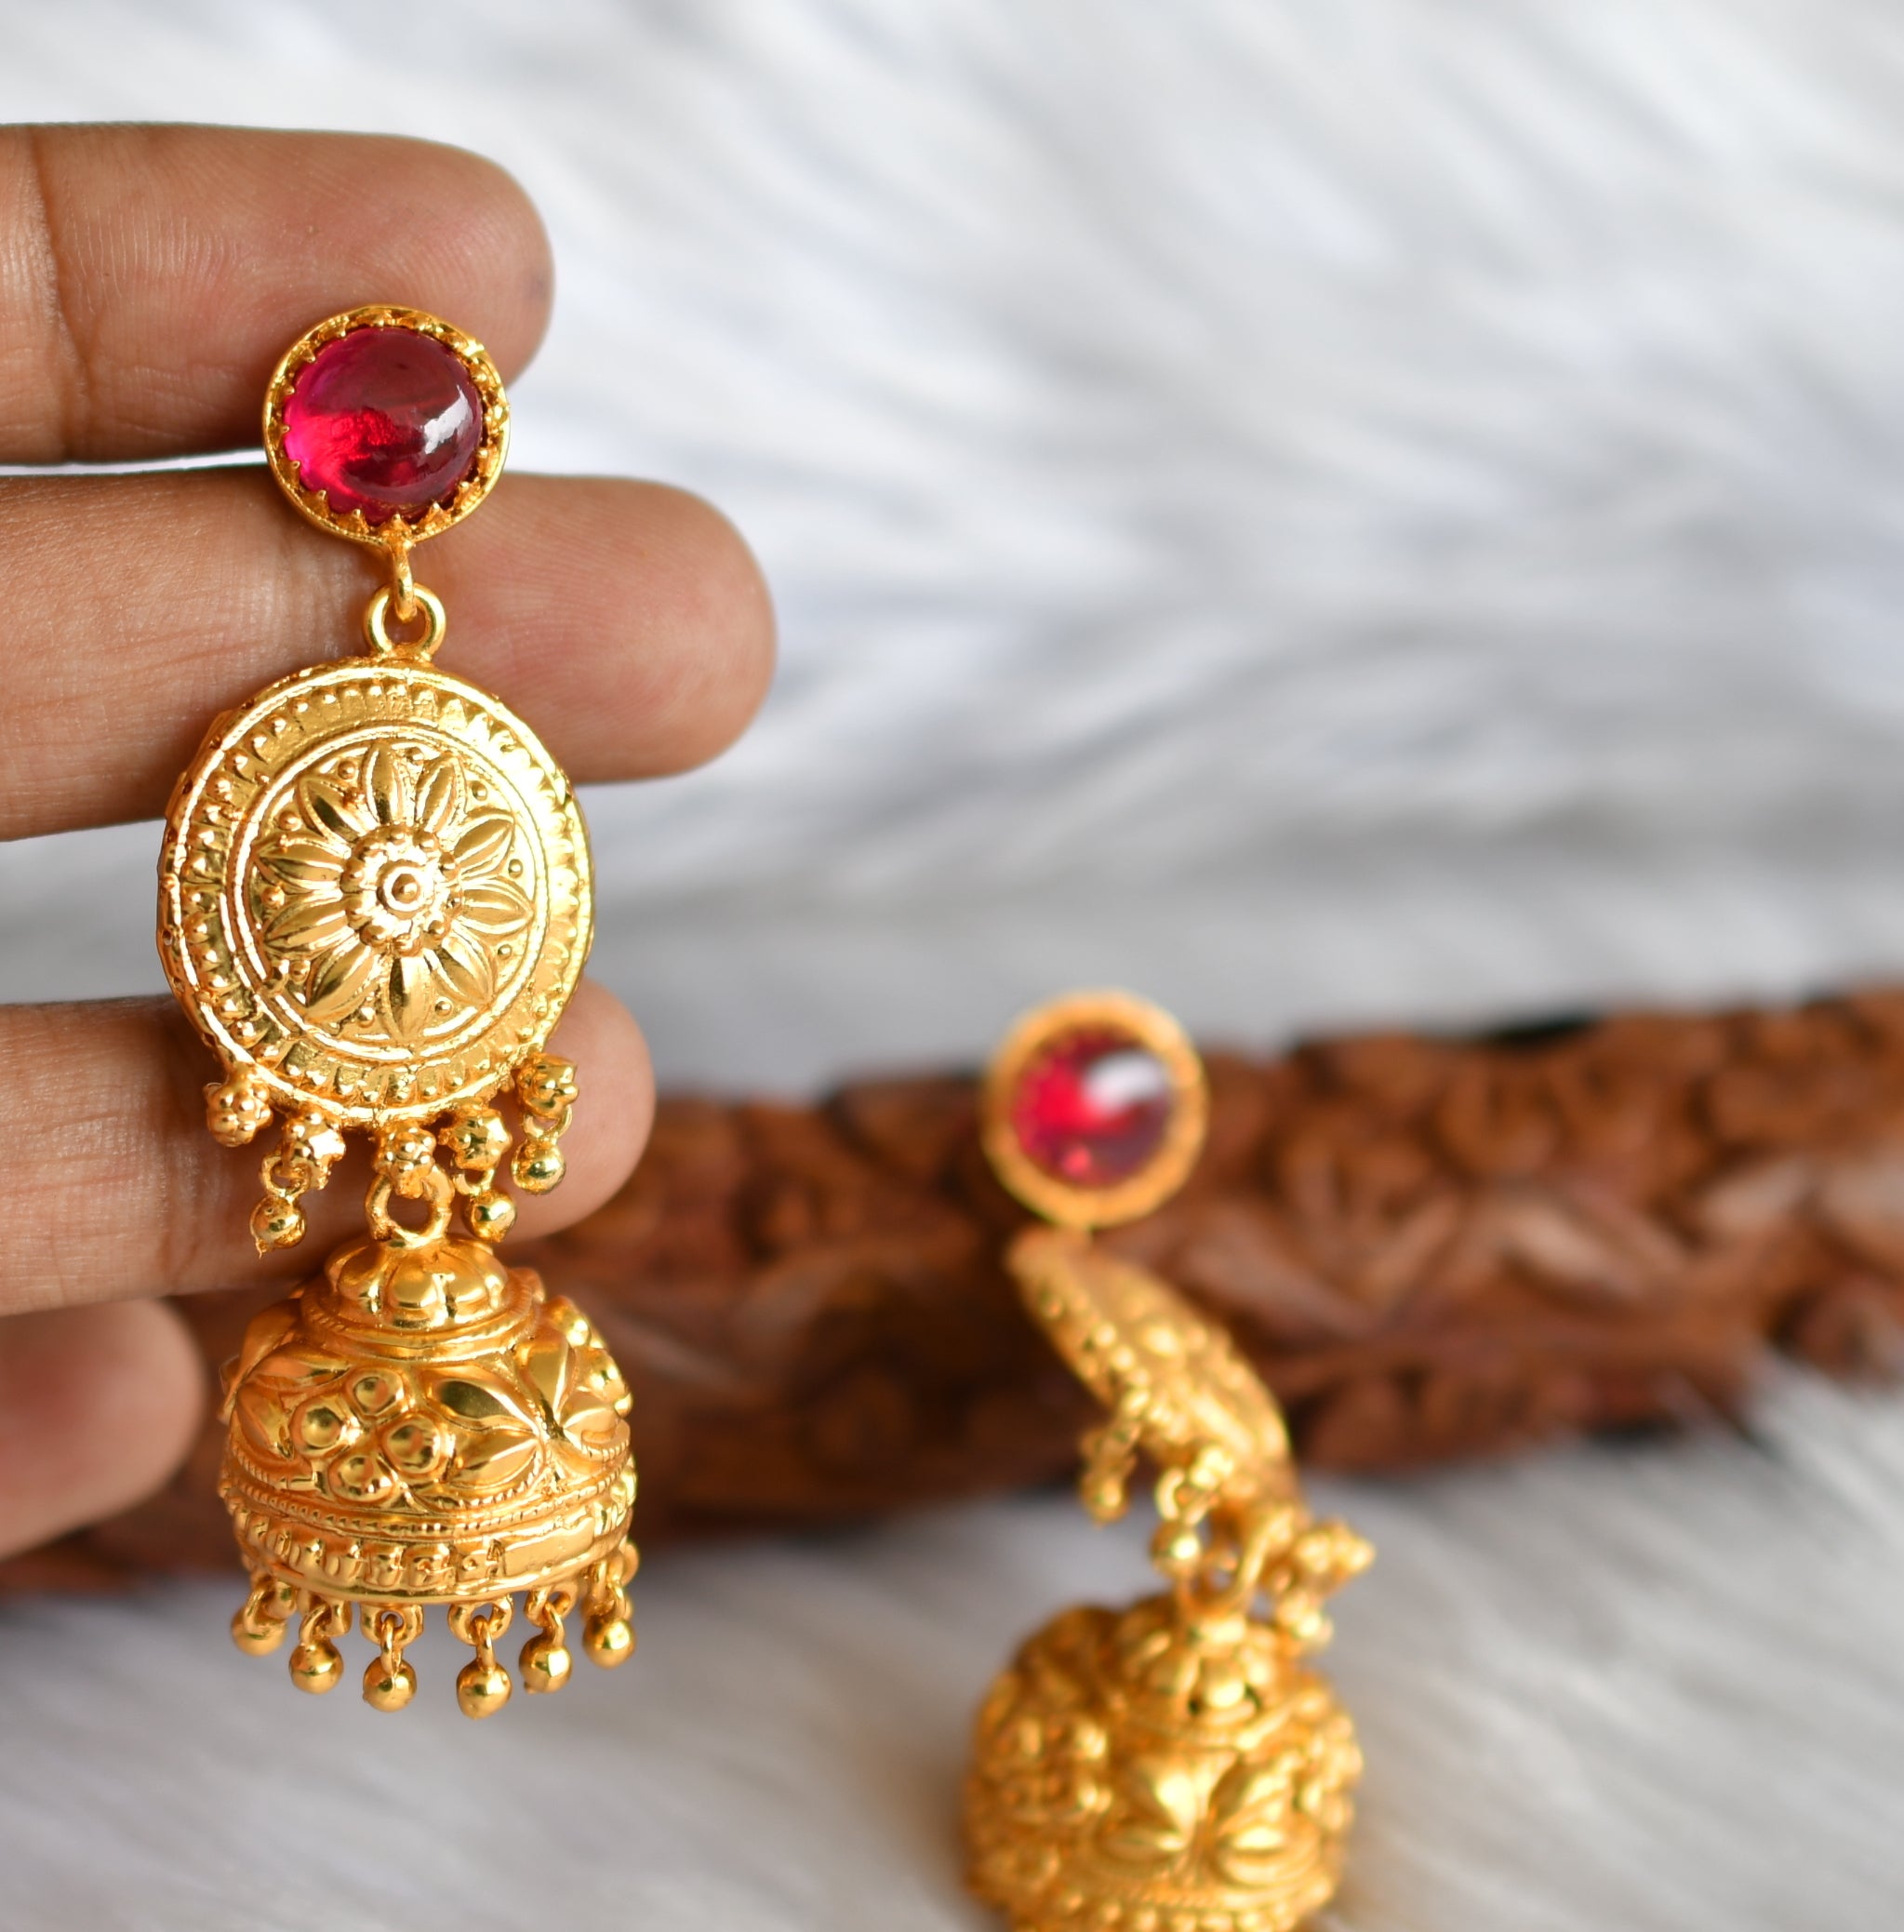 Look Like Gold Jhumka Earrings Online South Indian Designs J25127